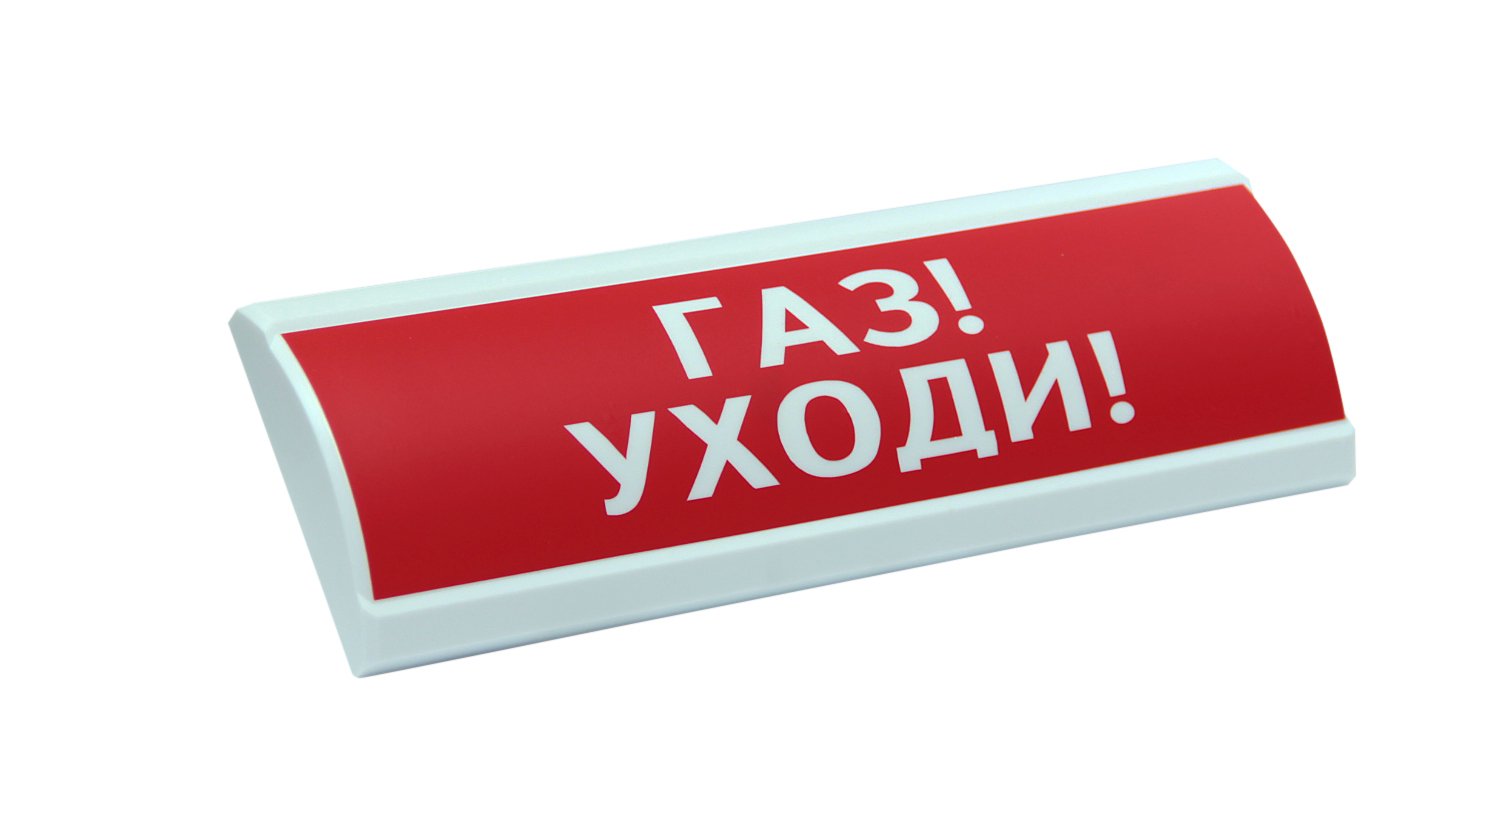 ЛЮКС-24 "Газ уходи": Оповещатель охранно-пожарный световой (табло)